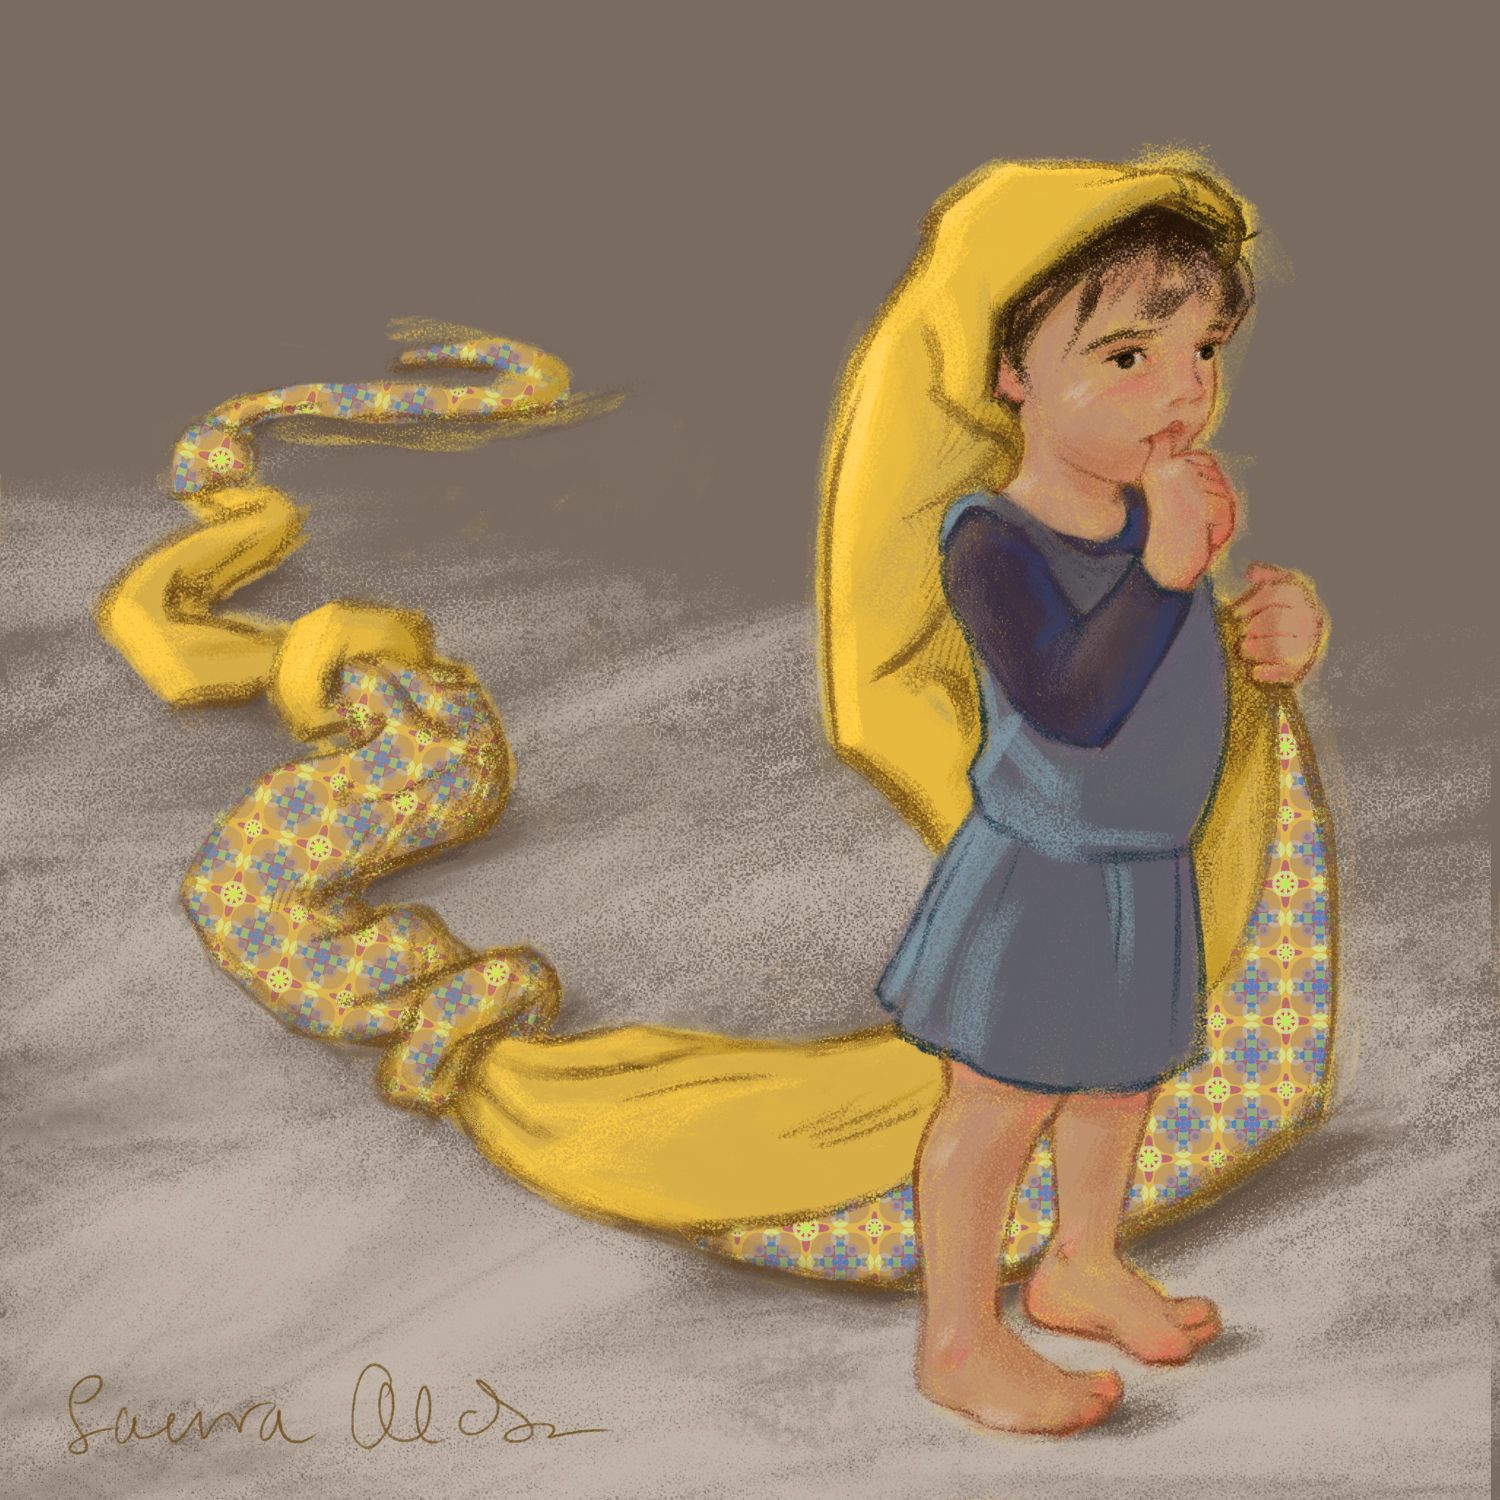 Francesco as Rapunzel smaller 5 (yellow).jpg